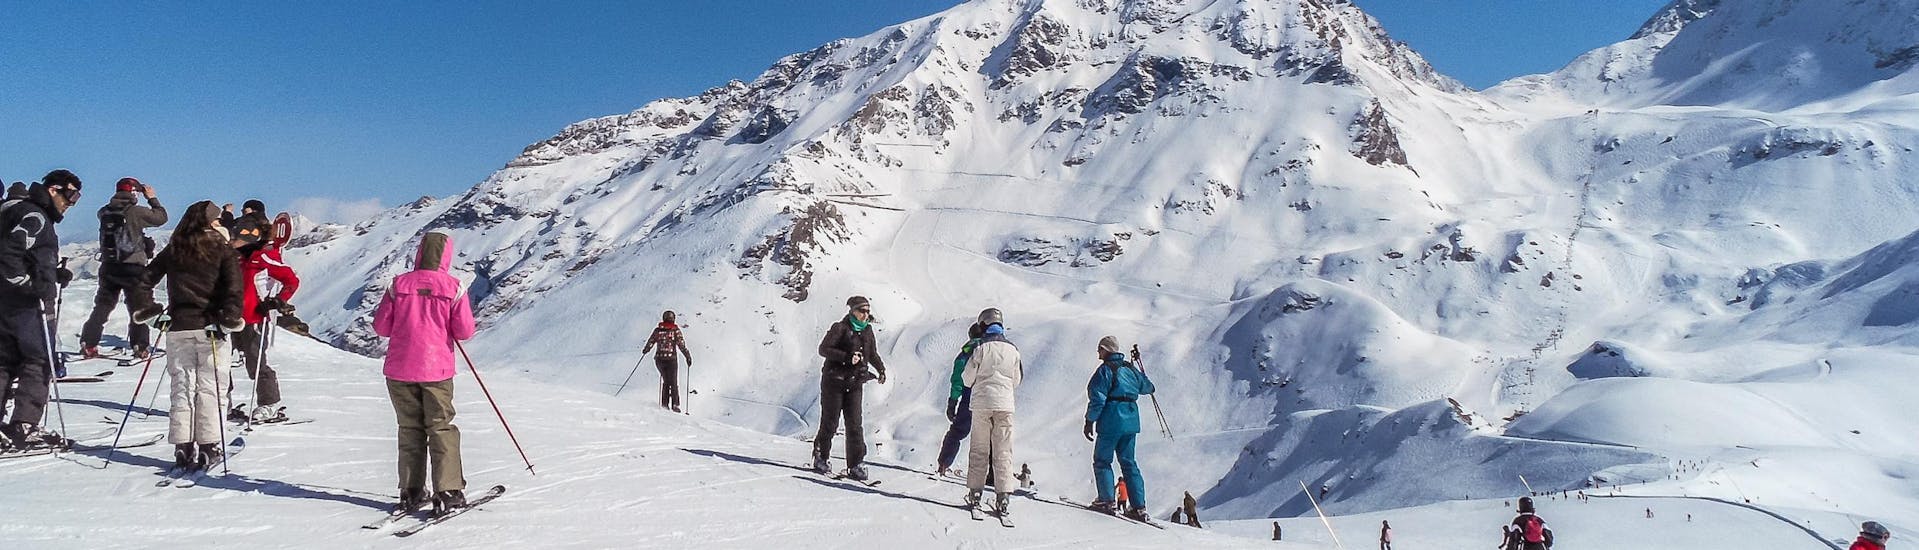 Adulti e bambini che sciano nella stazione sciistica di Les Arcs.